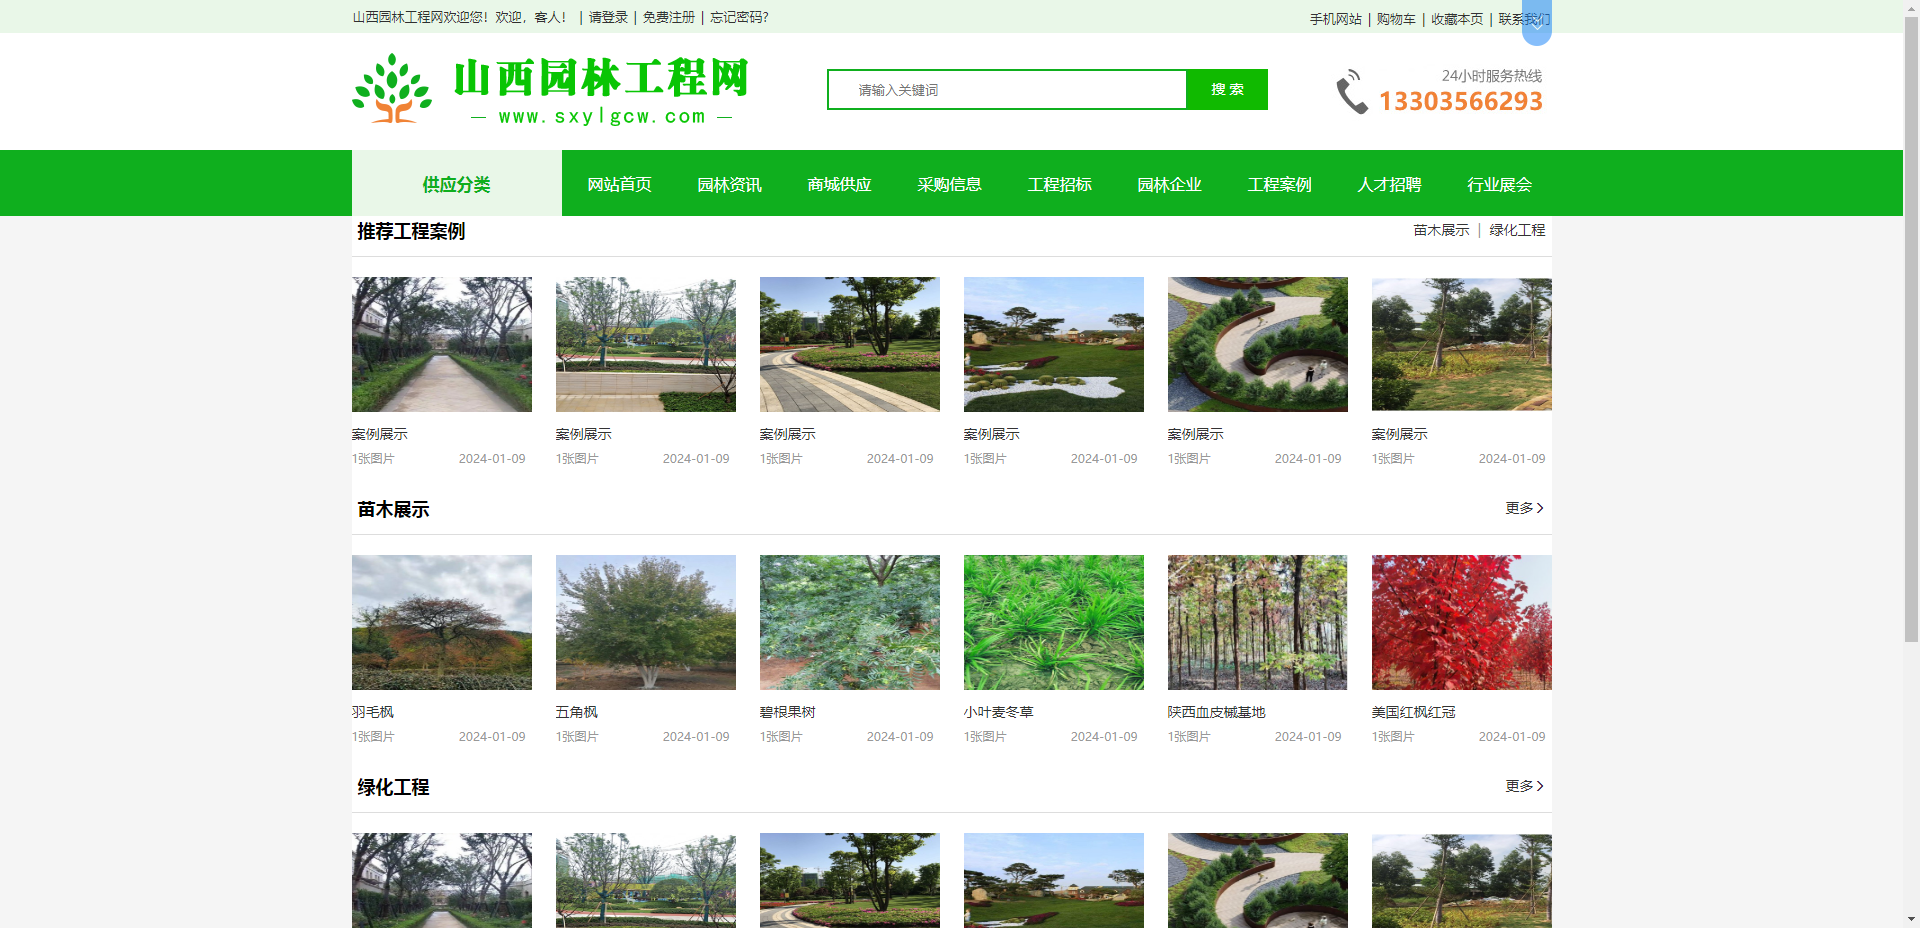 只有行为美,草儿才常青，山西园林工程网-中国浪潮娱乐网